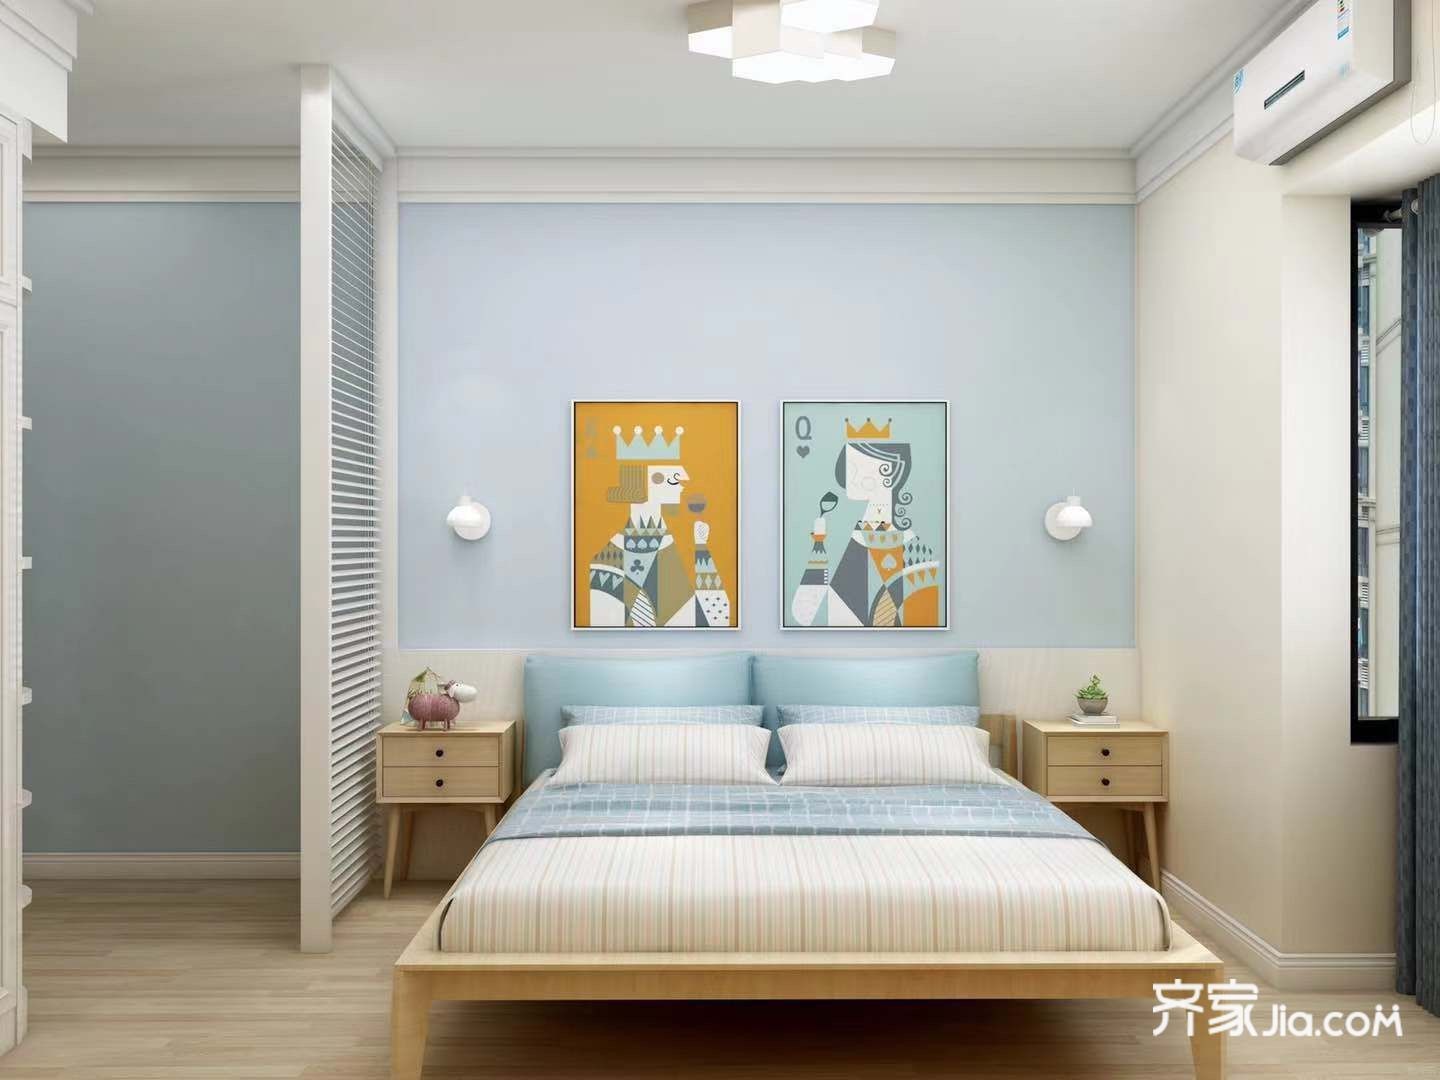 卧室家具整体以原木色为主,简洁大方.地板也是原木色与家具相呼应.